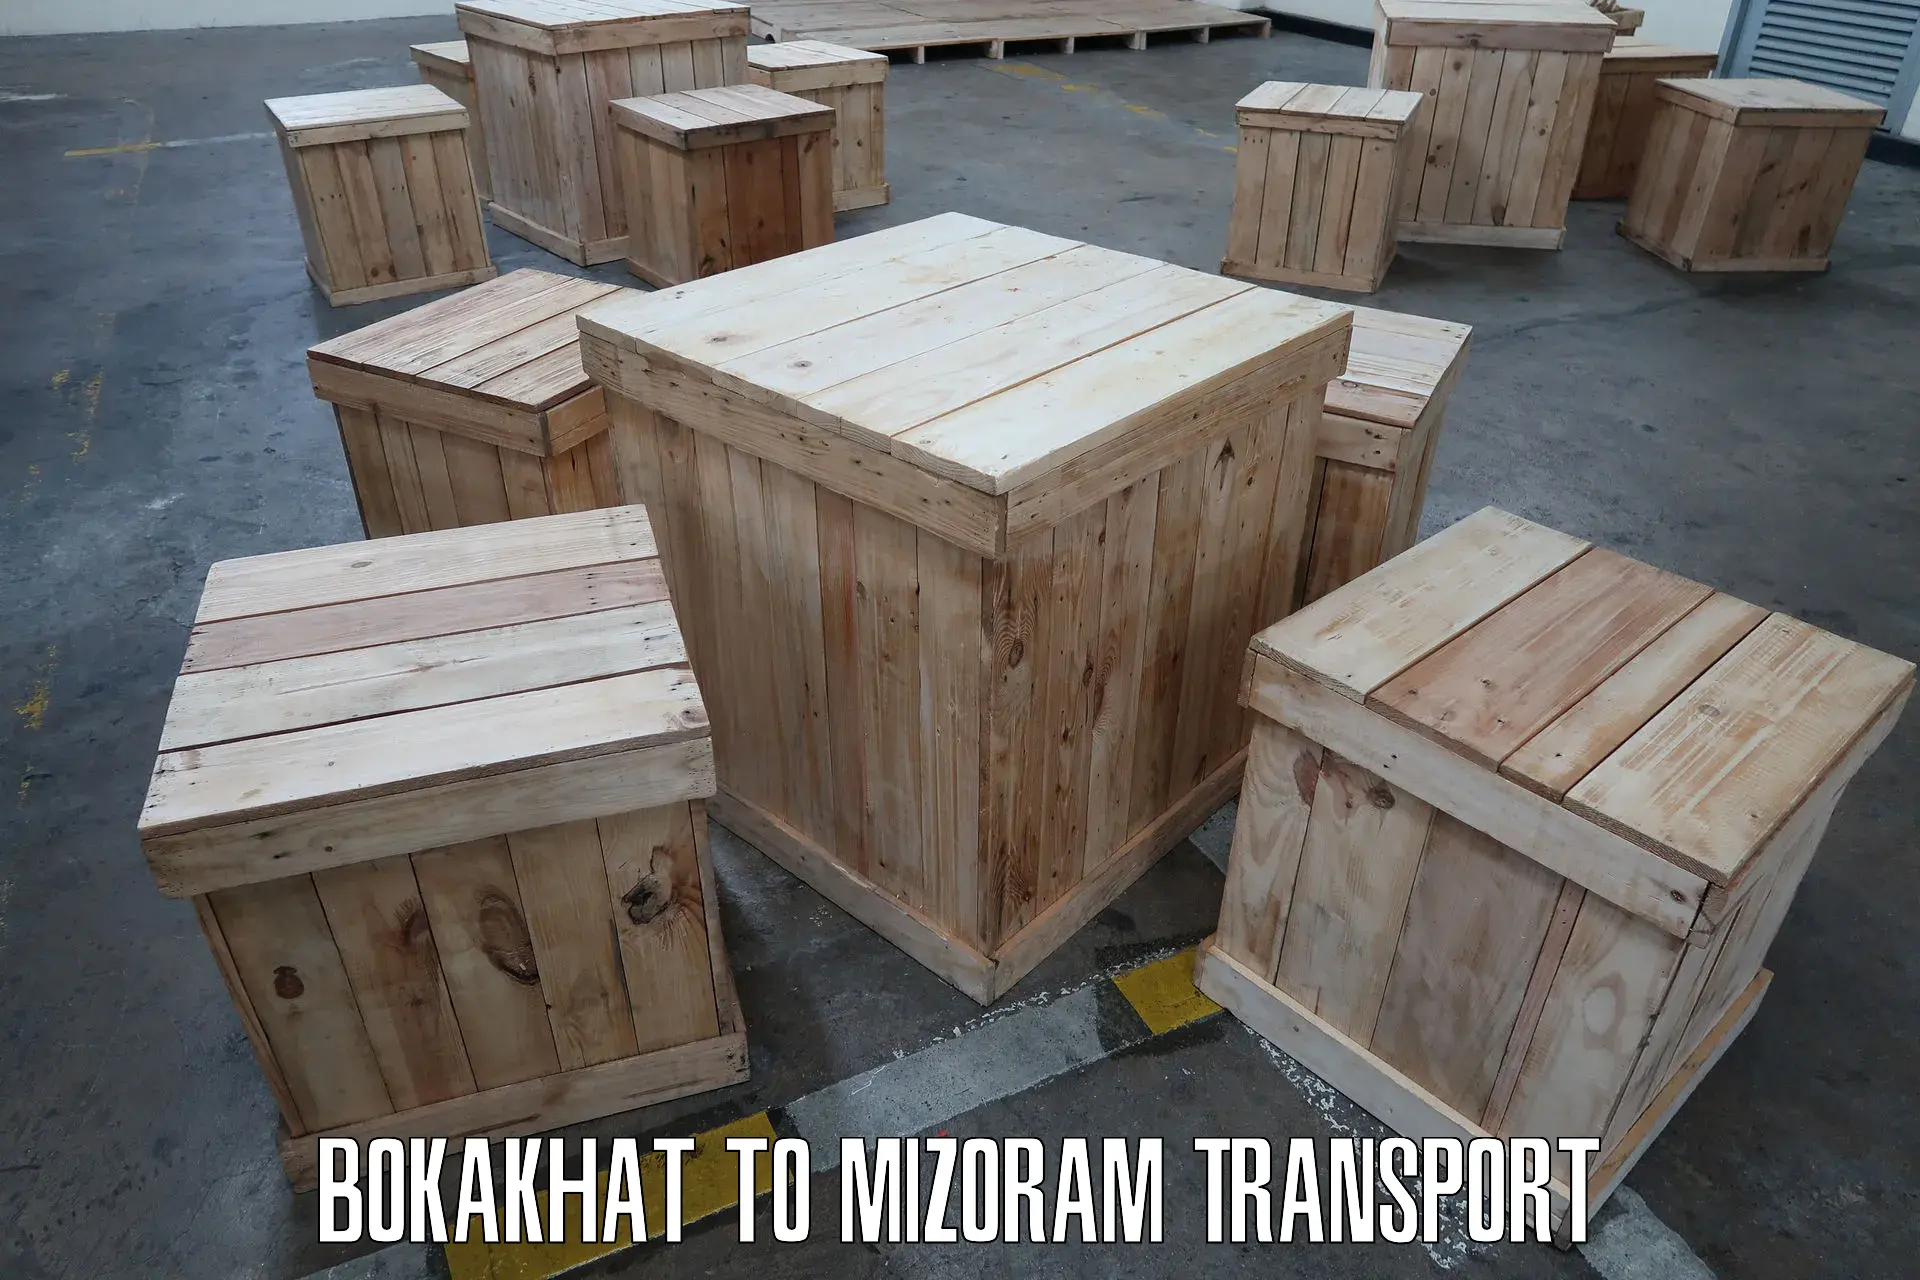 Transport in sharing Bokakhat to Thenzawl